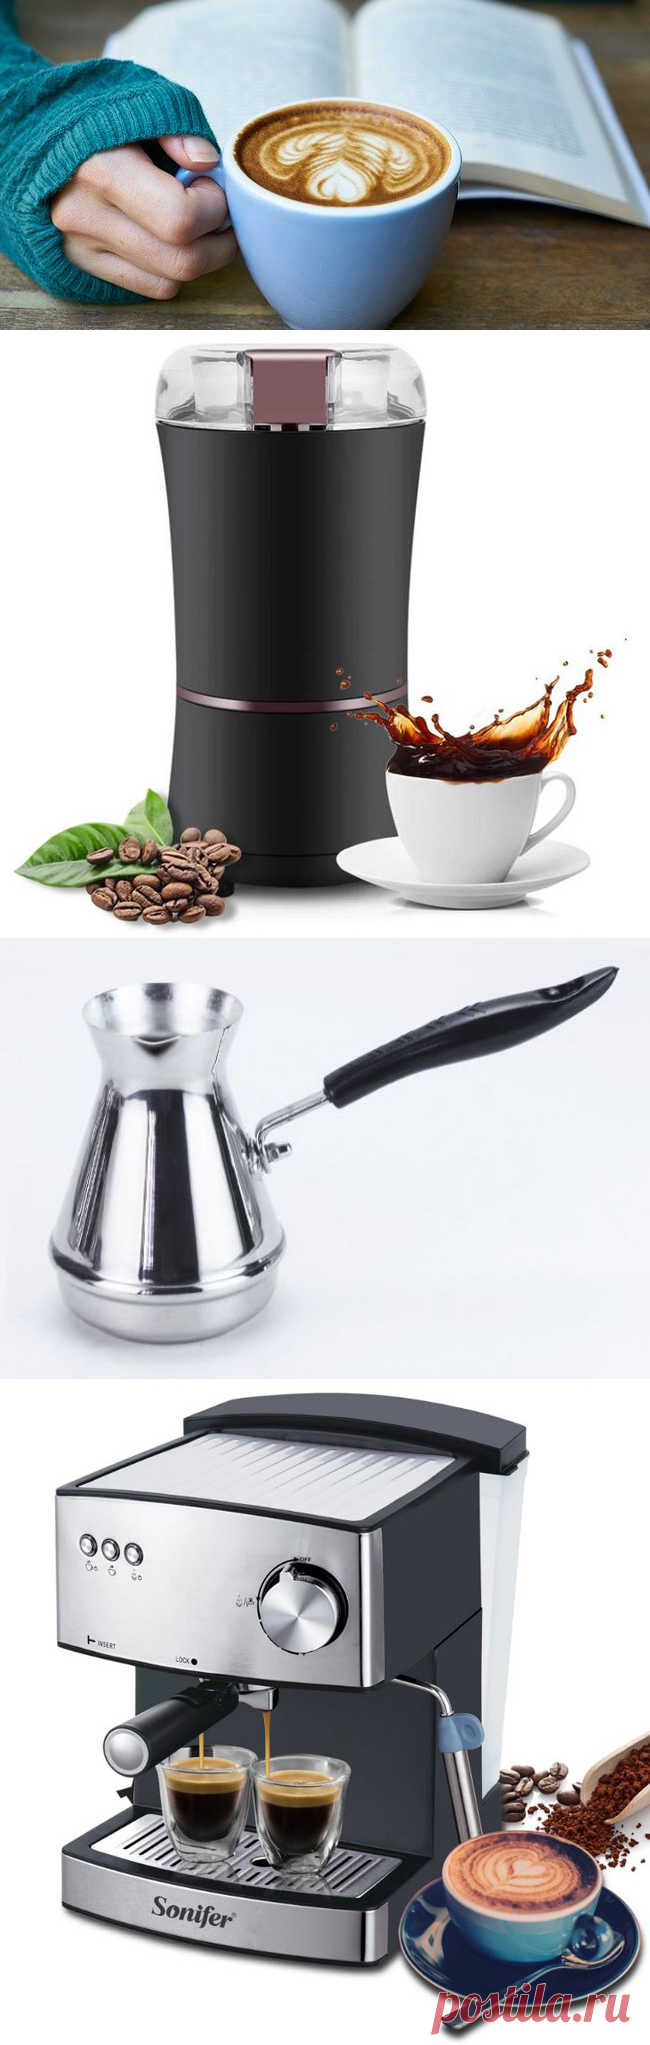 Подборка товаров необходимых для приготовления кофе с сайта Алиэкспресс | Super-Blog